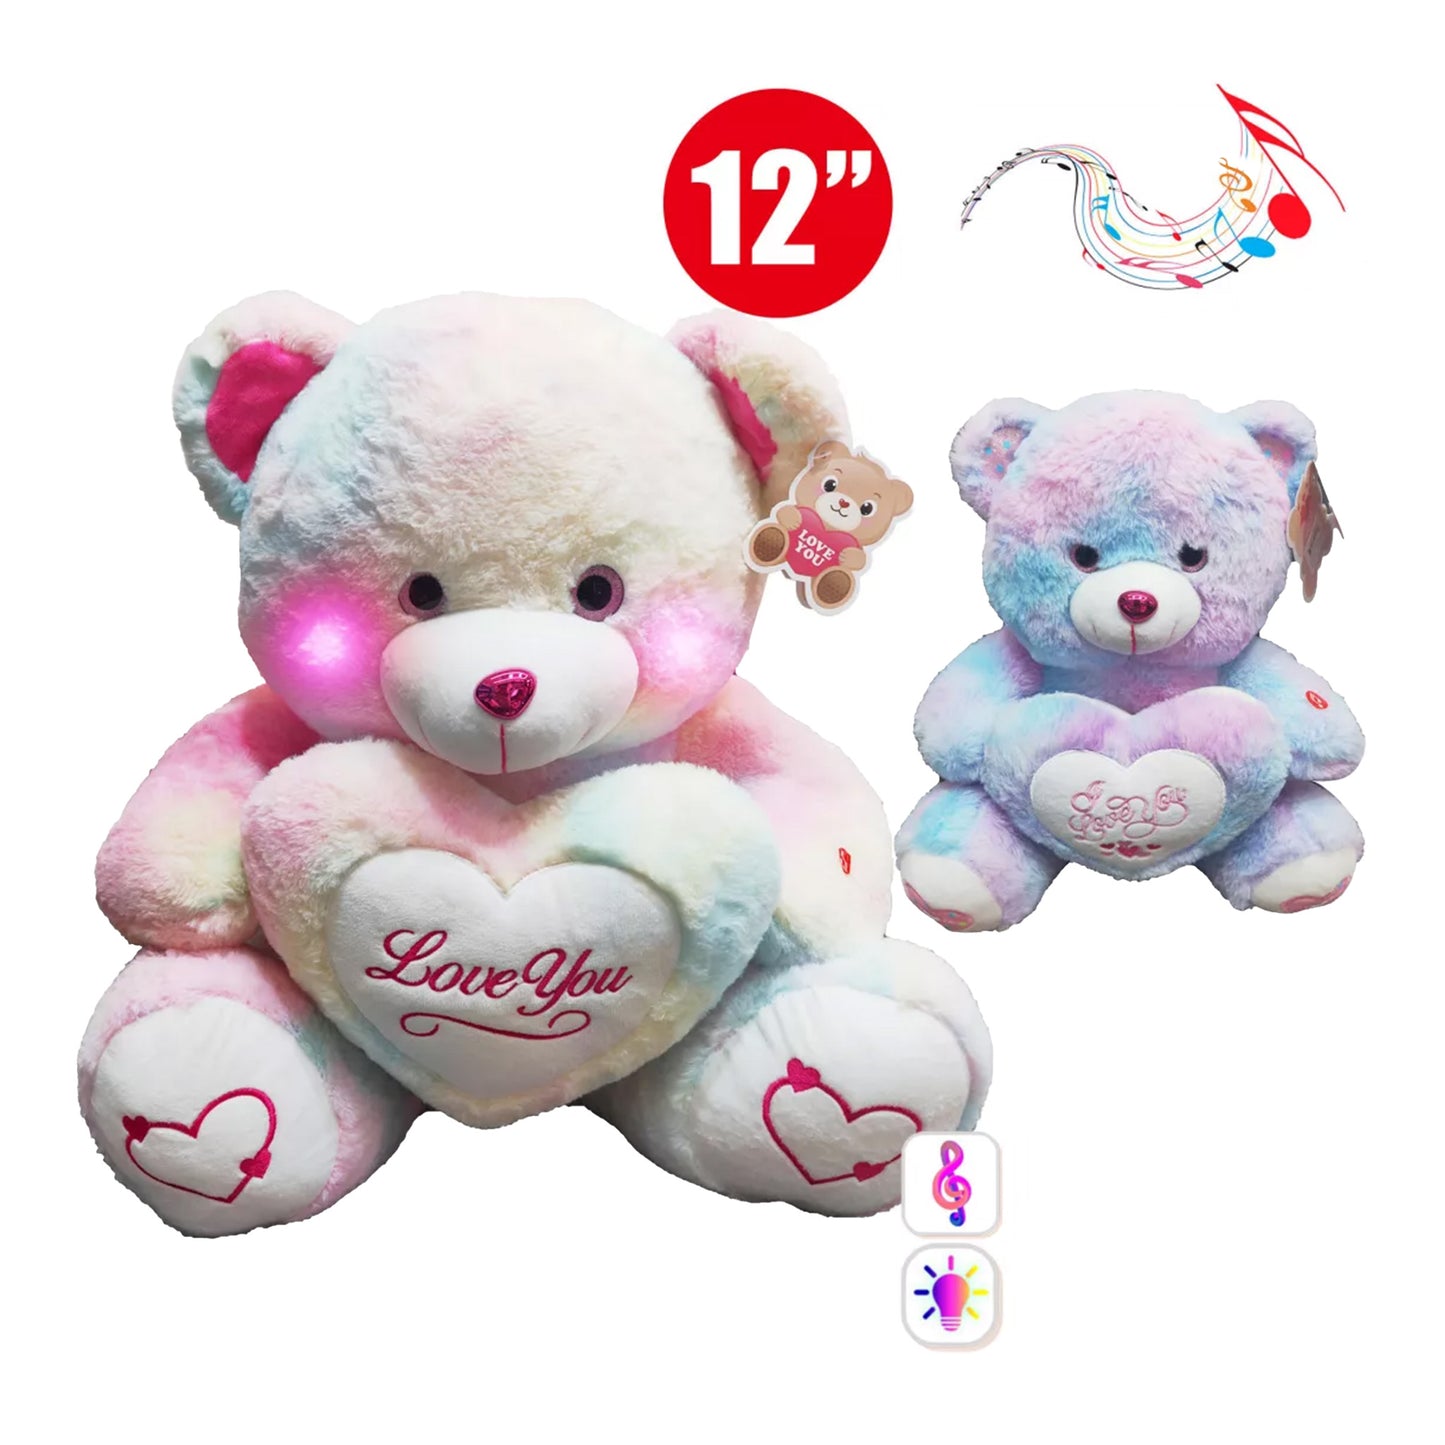 12-inch Teddy Bear Light & Music with Heart